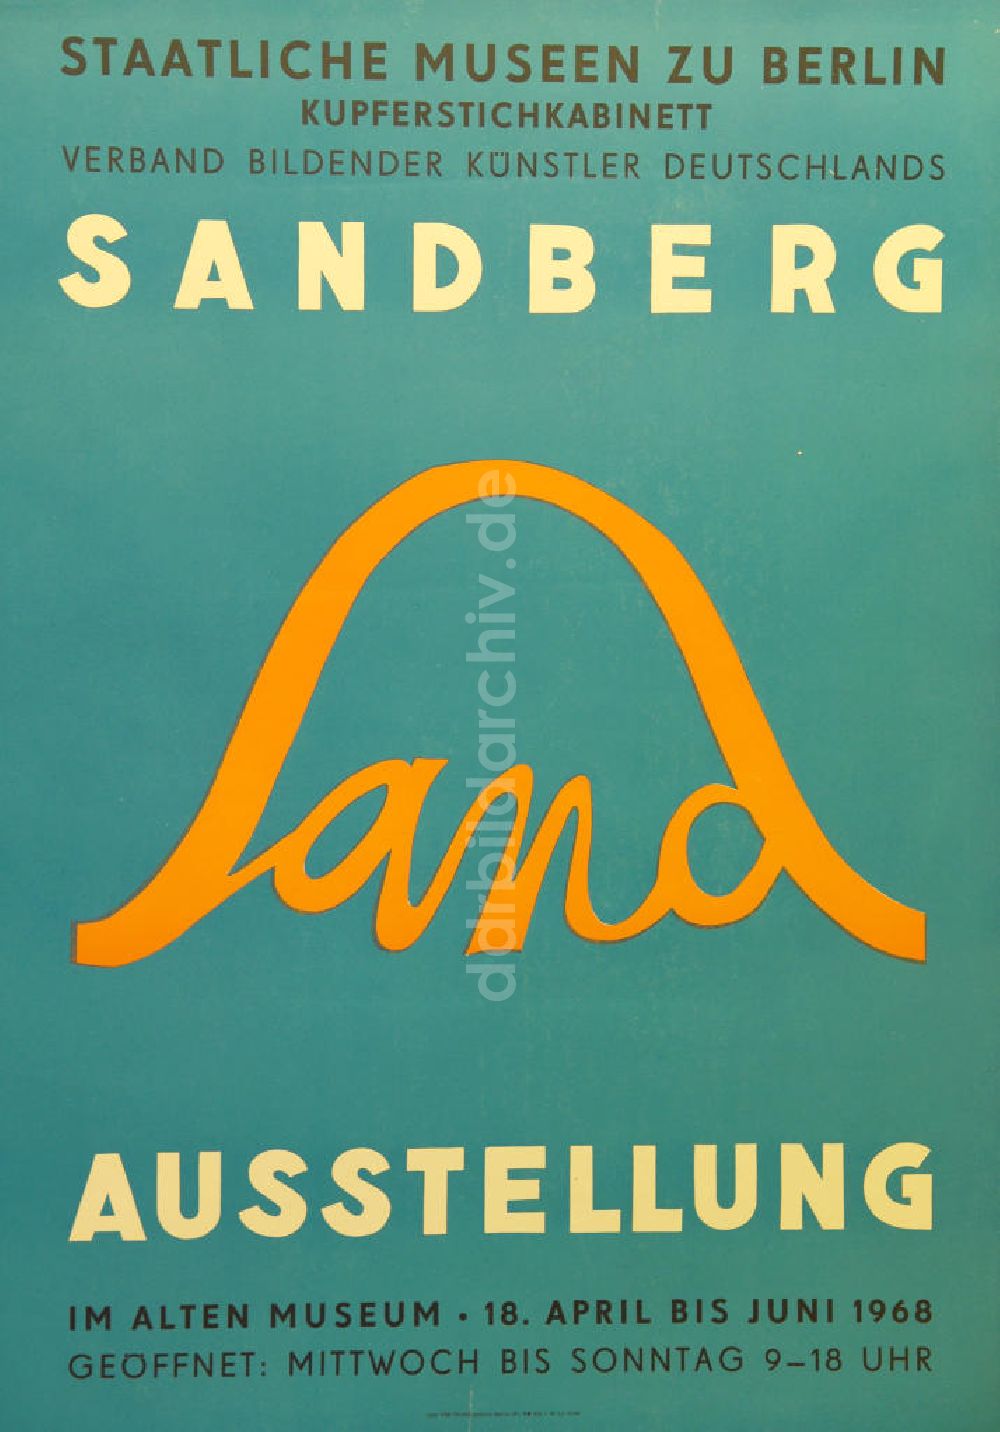 DDR-Fotoarchiv: Berlin - Plakat von der Ausstellung Sandberg über Herbert Sandberg aus dem Jahr 1968